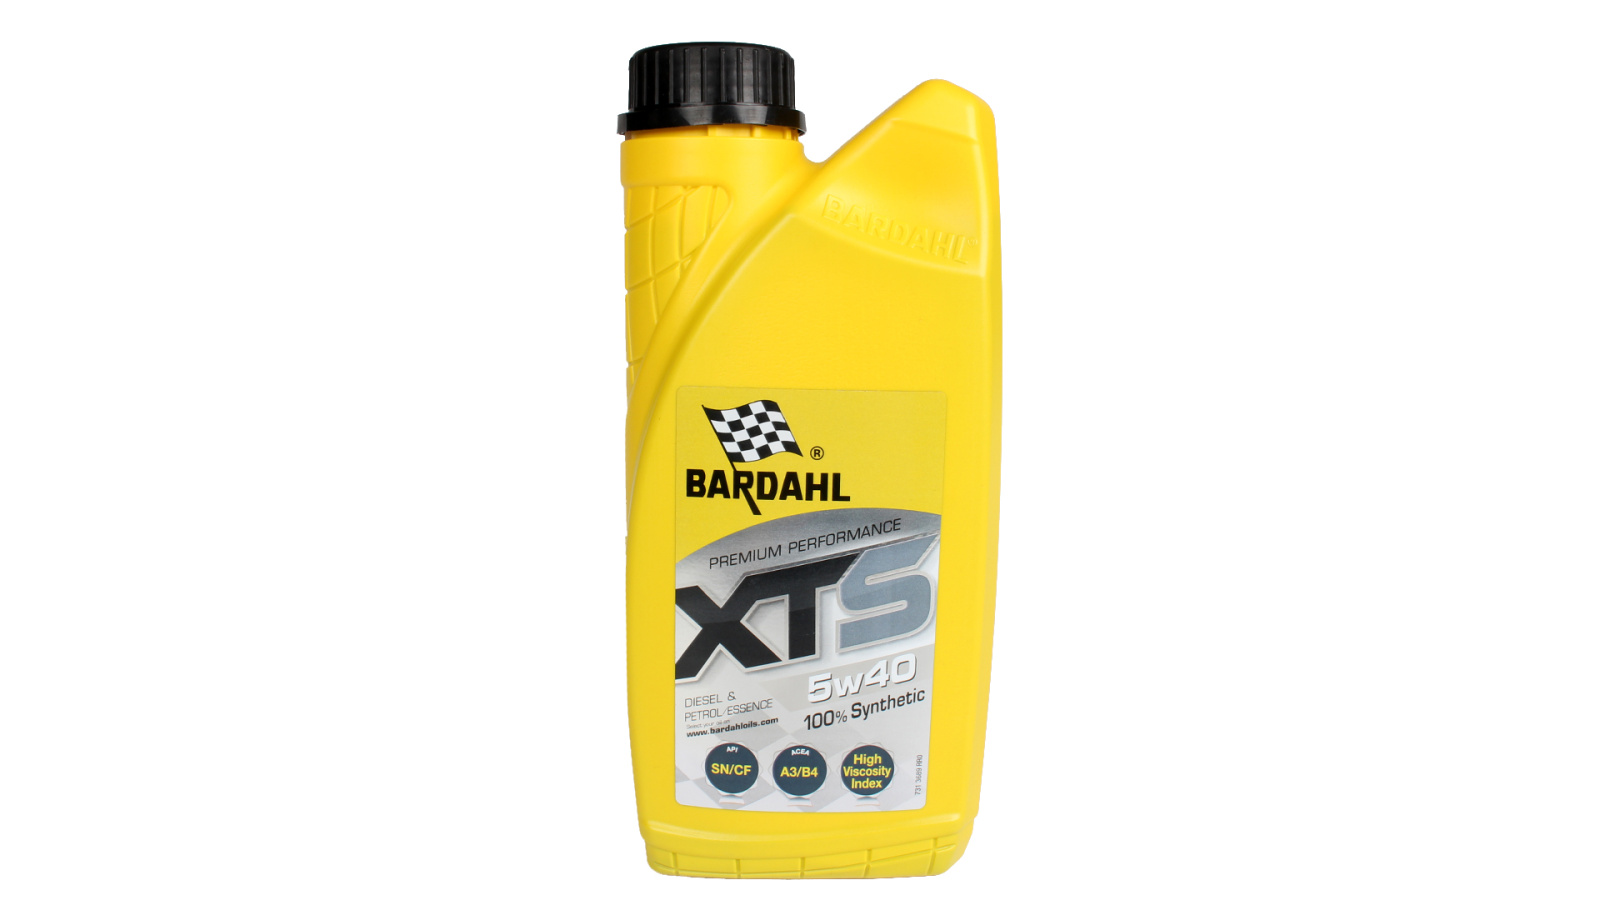 Моторное масло BARDAHL Xts A3/B4, Api Sn/Cf синтетическое 5W40 1л